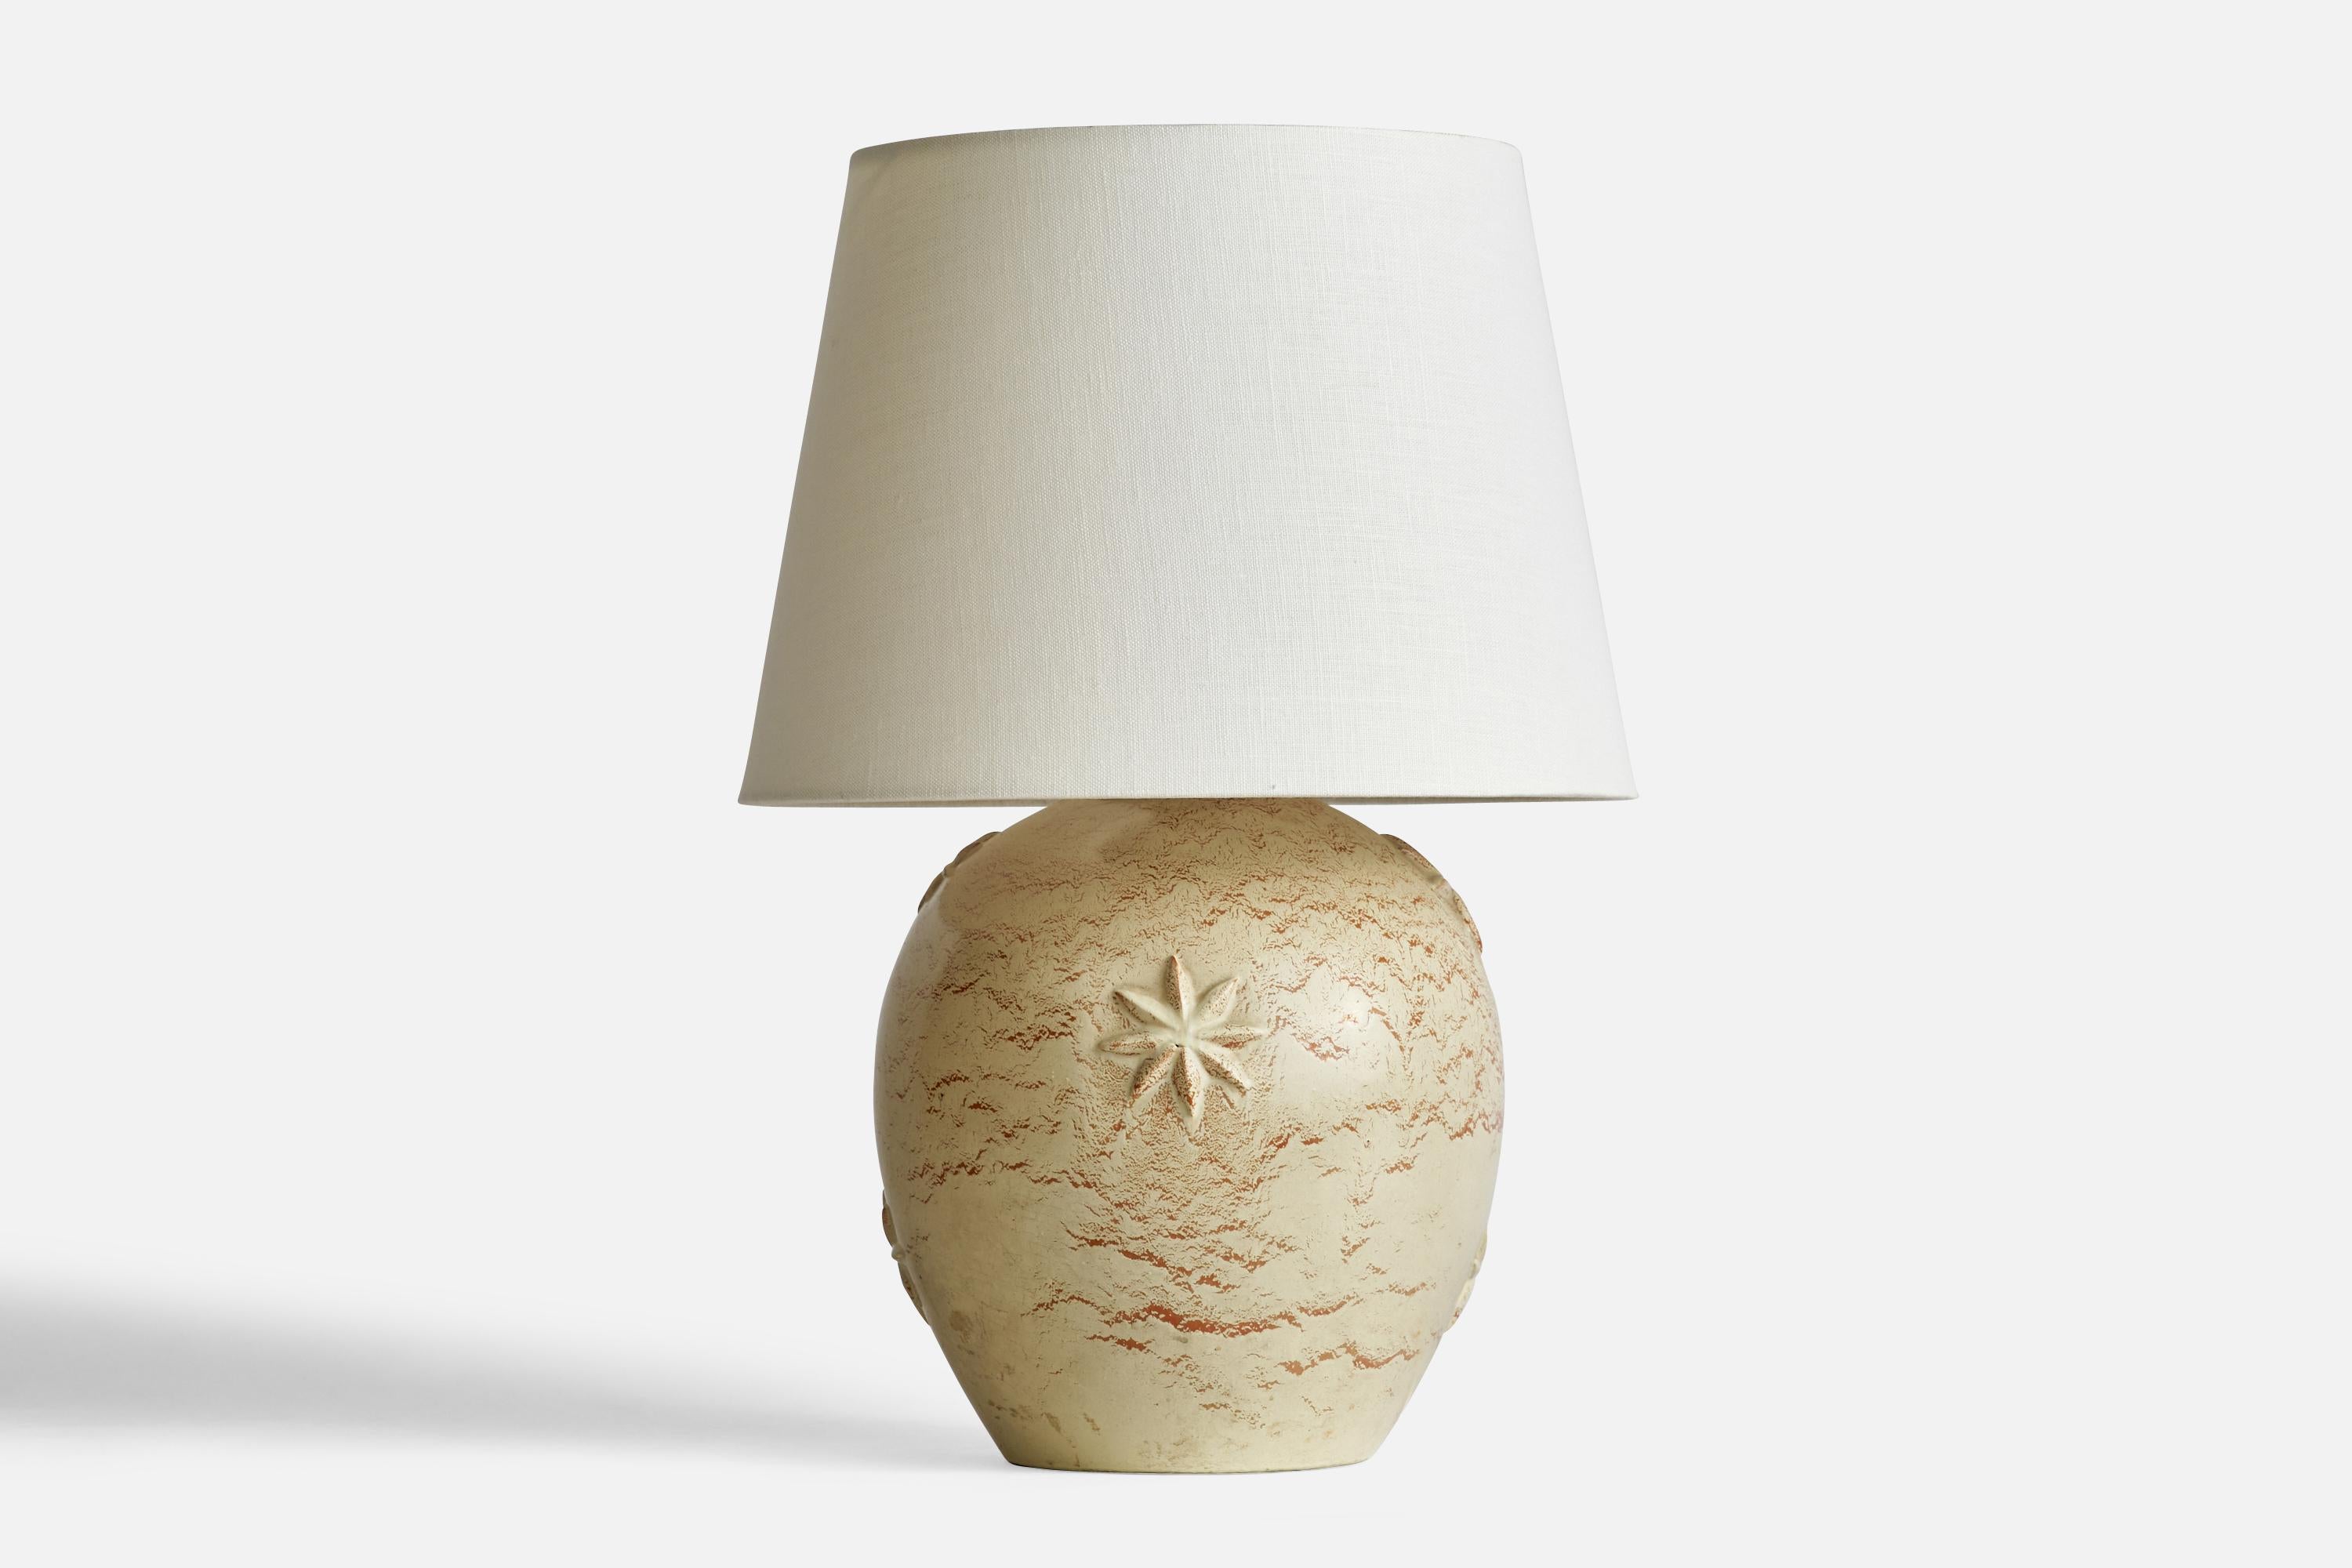 Lampe de table en céramique beige clair et laiton conçue par Jerk Werkmäster et produite par Nittsjö, Suède, vers les années 1930.

Dimensions de la lampe (pouces) : 11.9